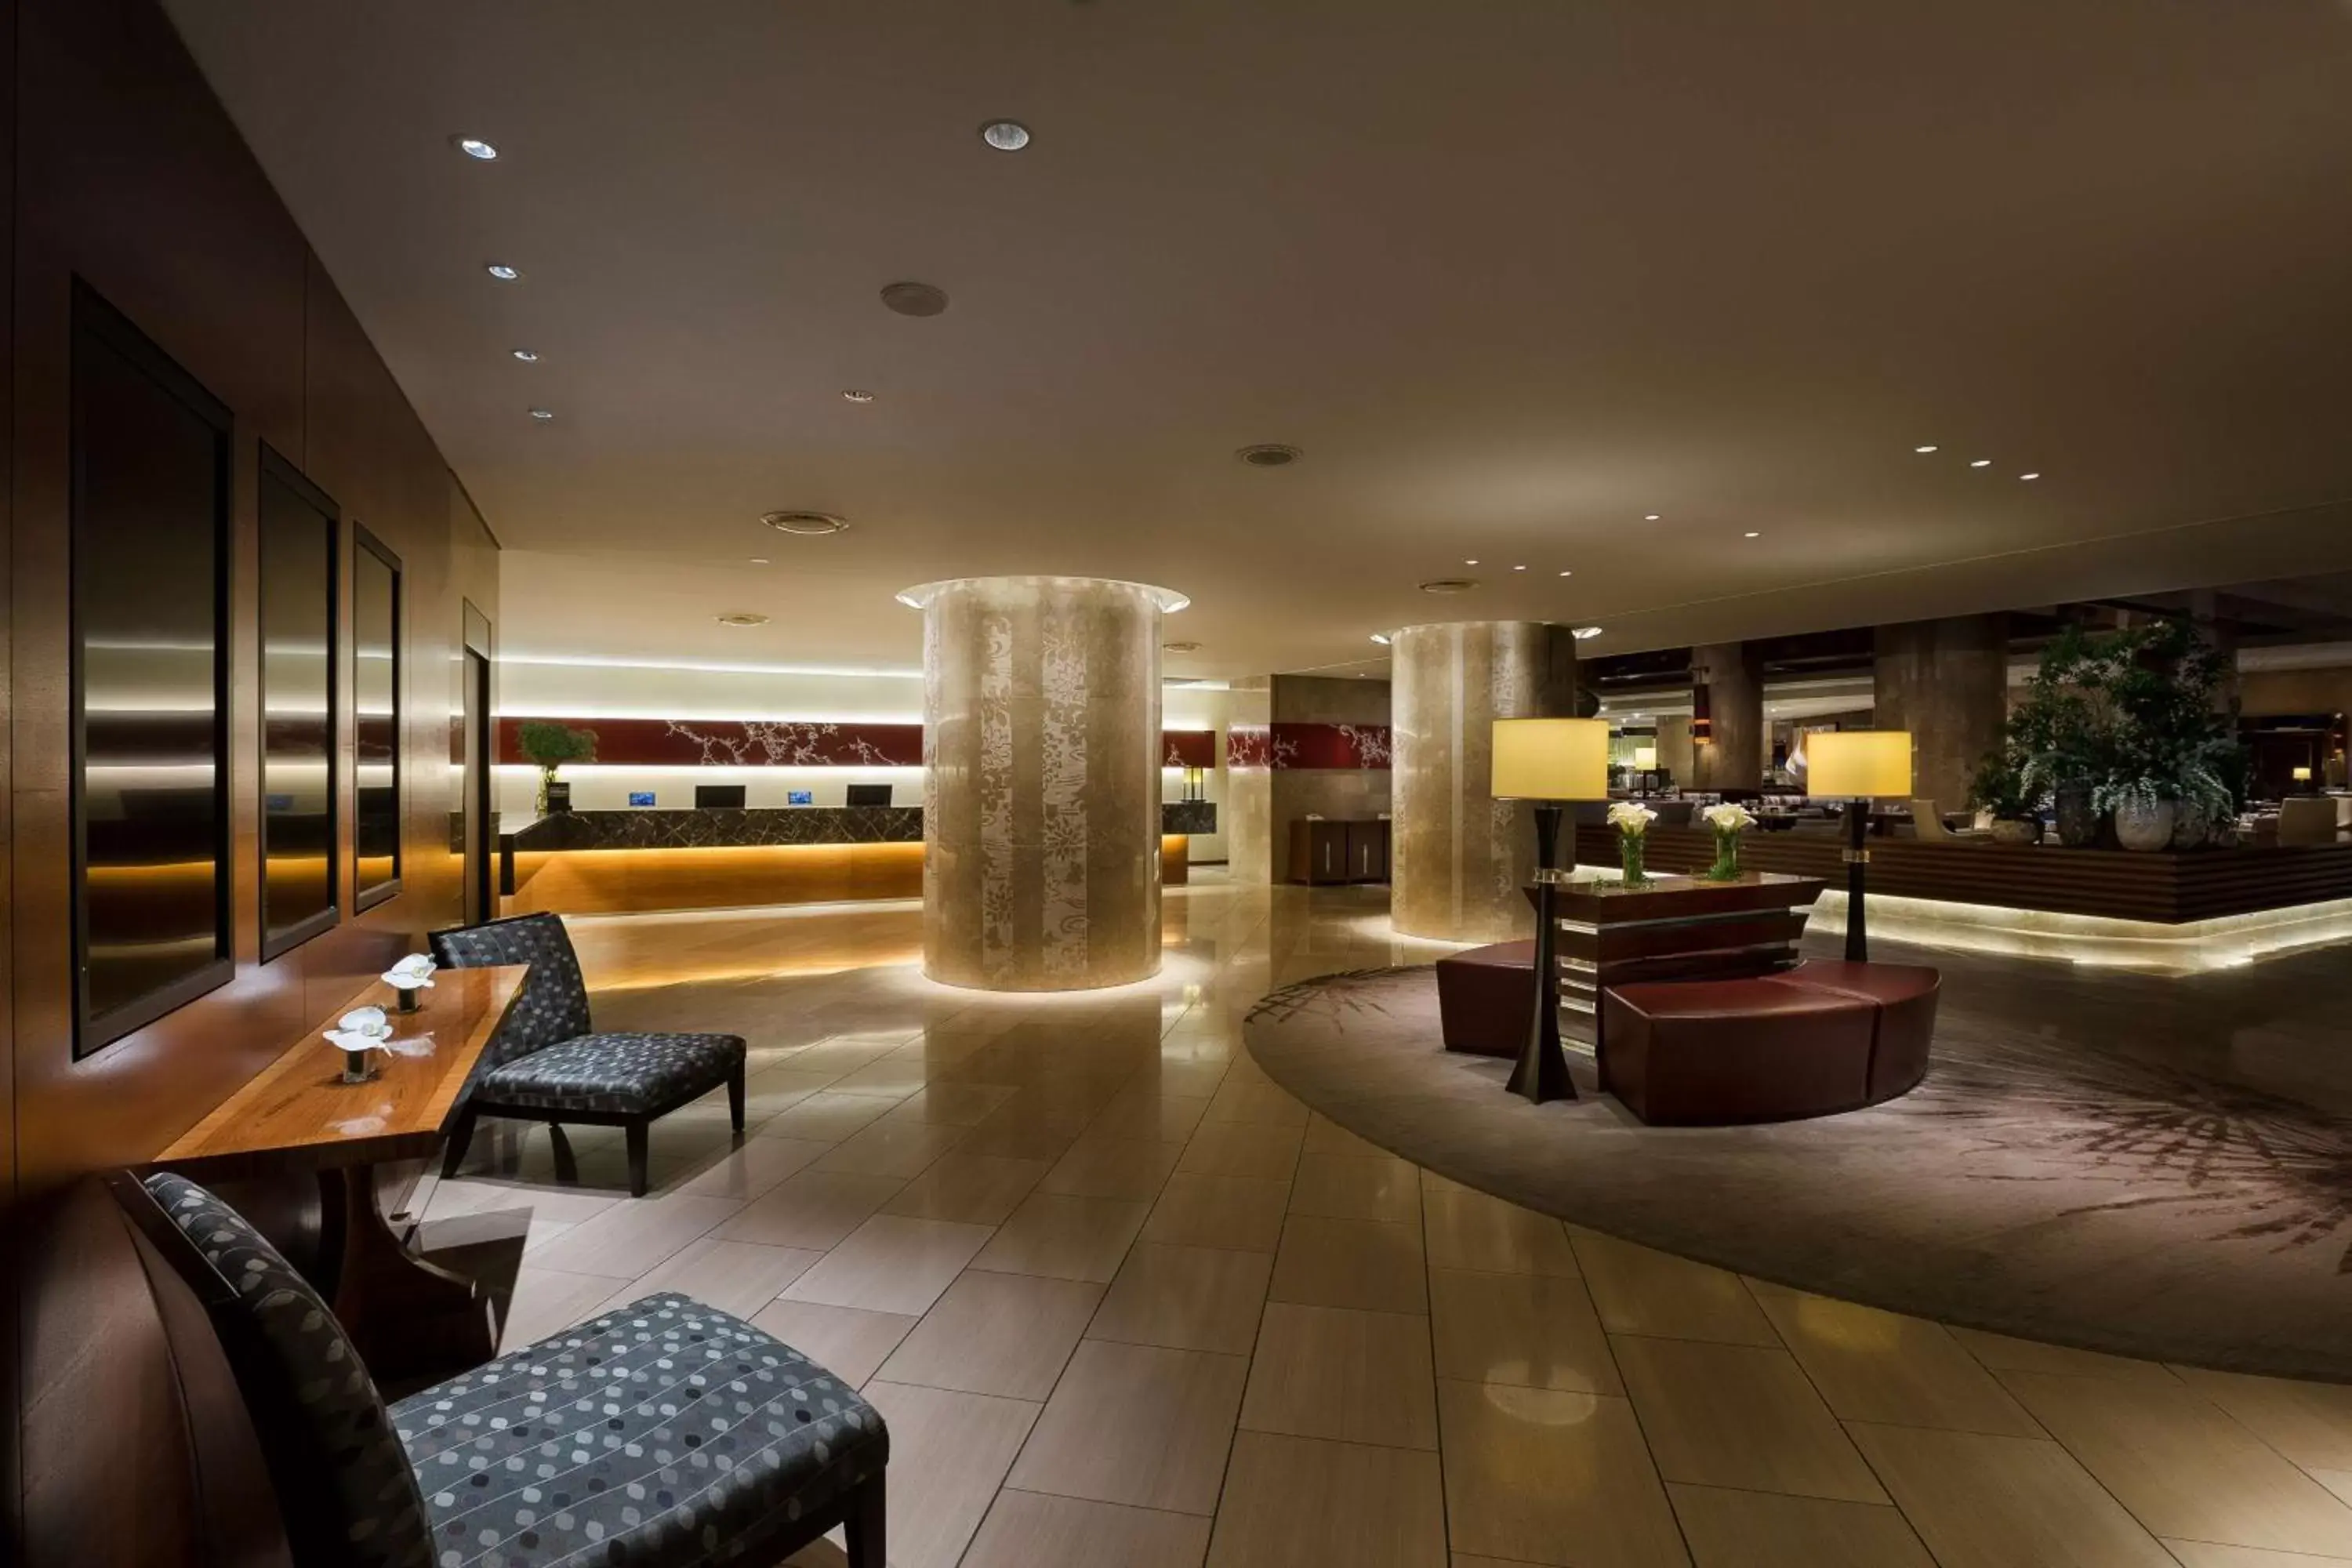 Lobby or reception, Lobby/Reception in Hilton Tokyo Hotel